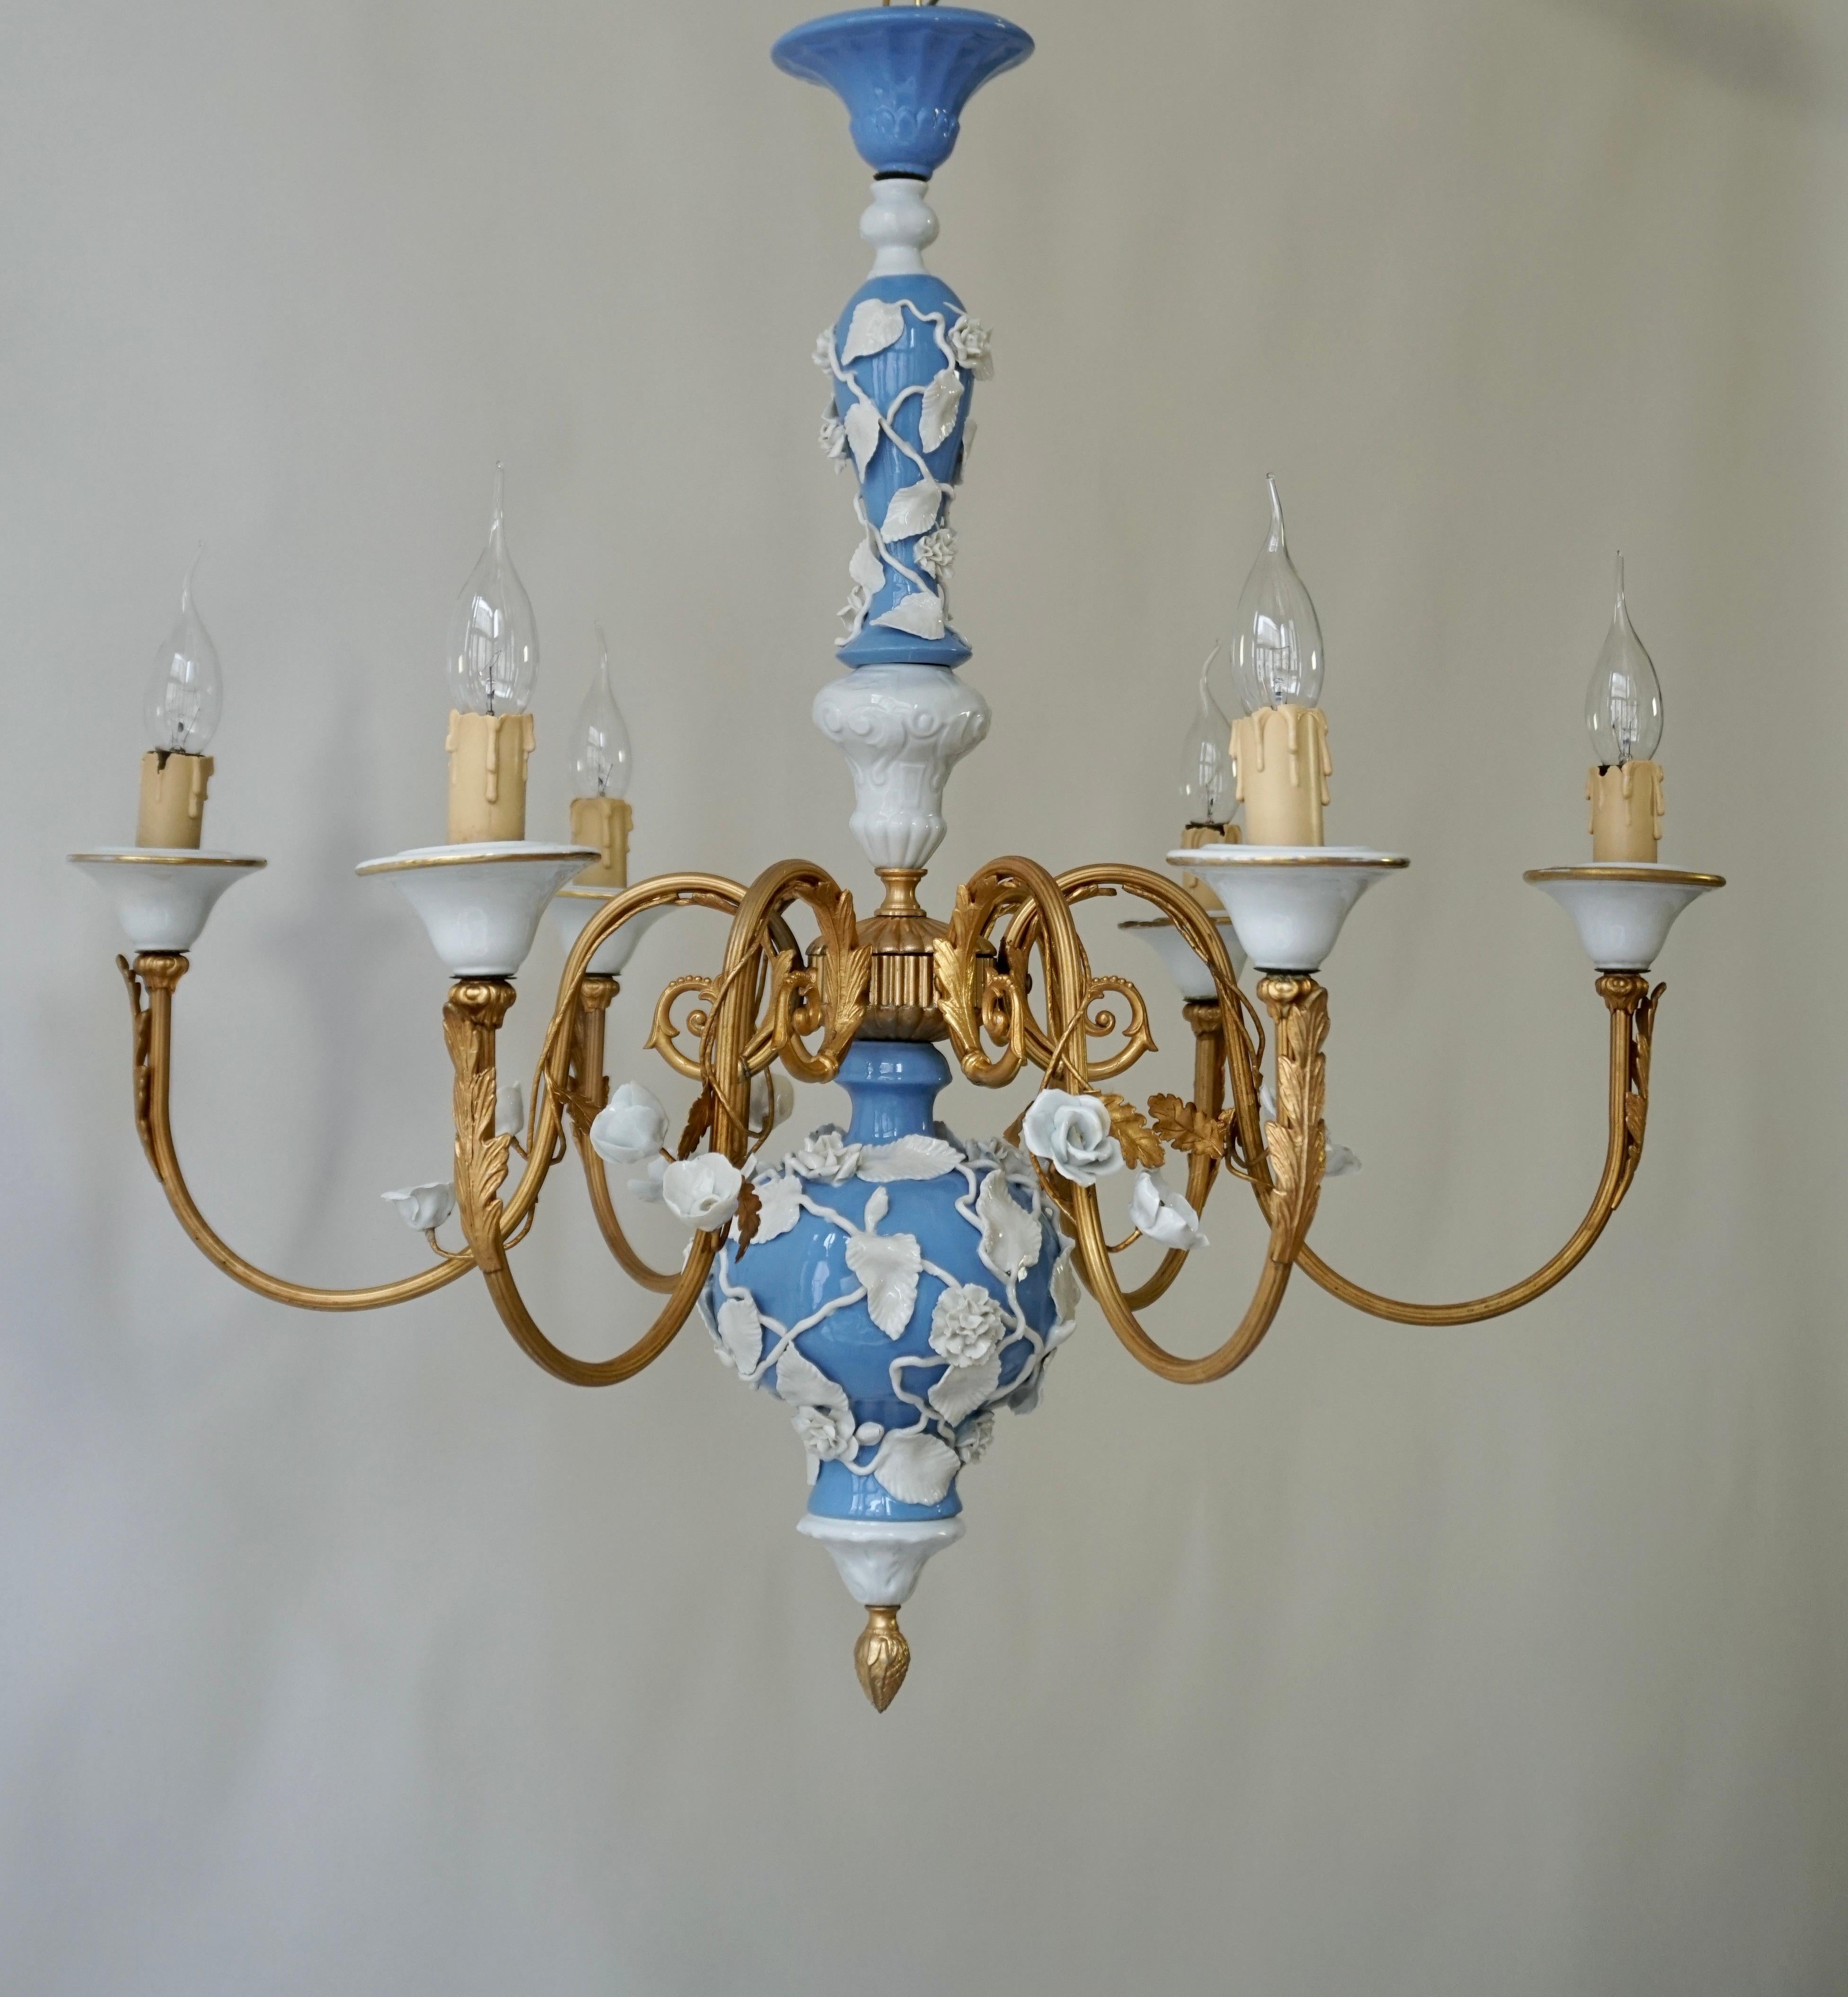 Eleganter Kronleuchter aus weißem und blauem Porzellan mit vergoldeten Akanthusblatt-Details.
Es gibt 6 Arme, die jeweils eine einzelne Lampenfassung (e14) tragen 

Die Leuchte hat sechs Fassungen für kleine Glühbirnen mit Schraubsockel oder LEDs